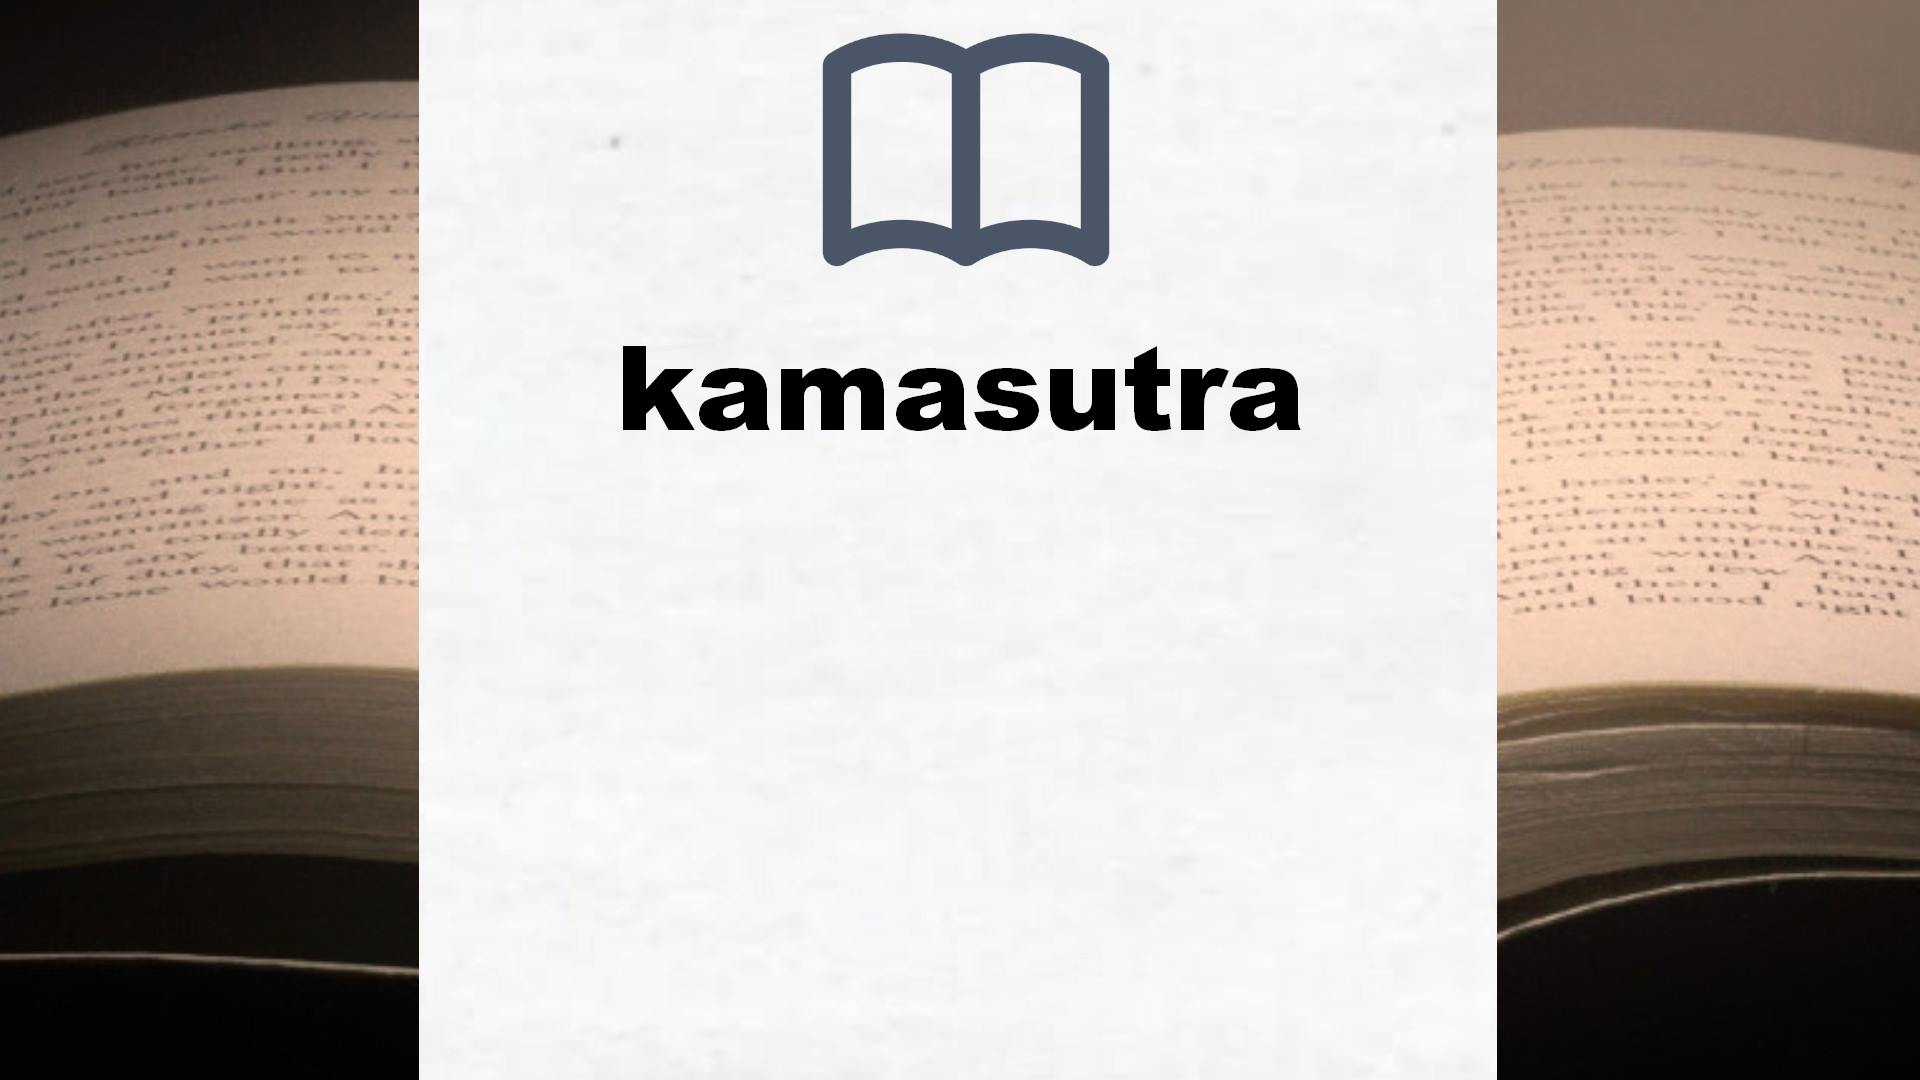 Libros sobre kamasutra